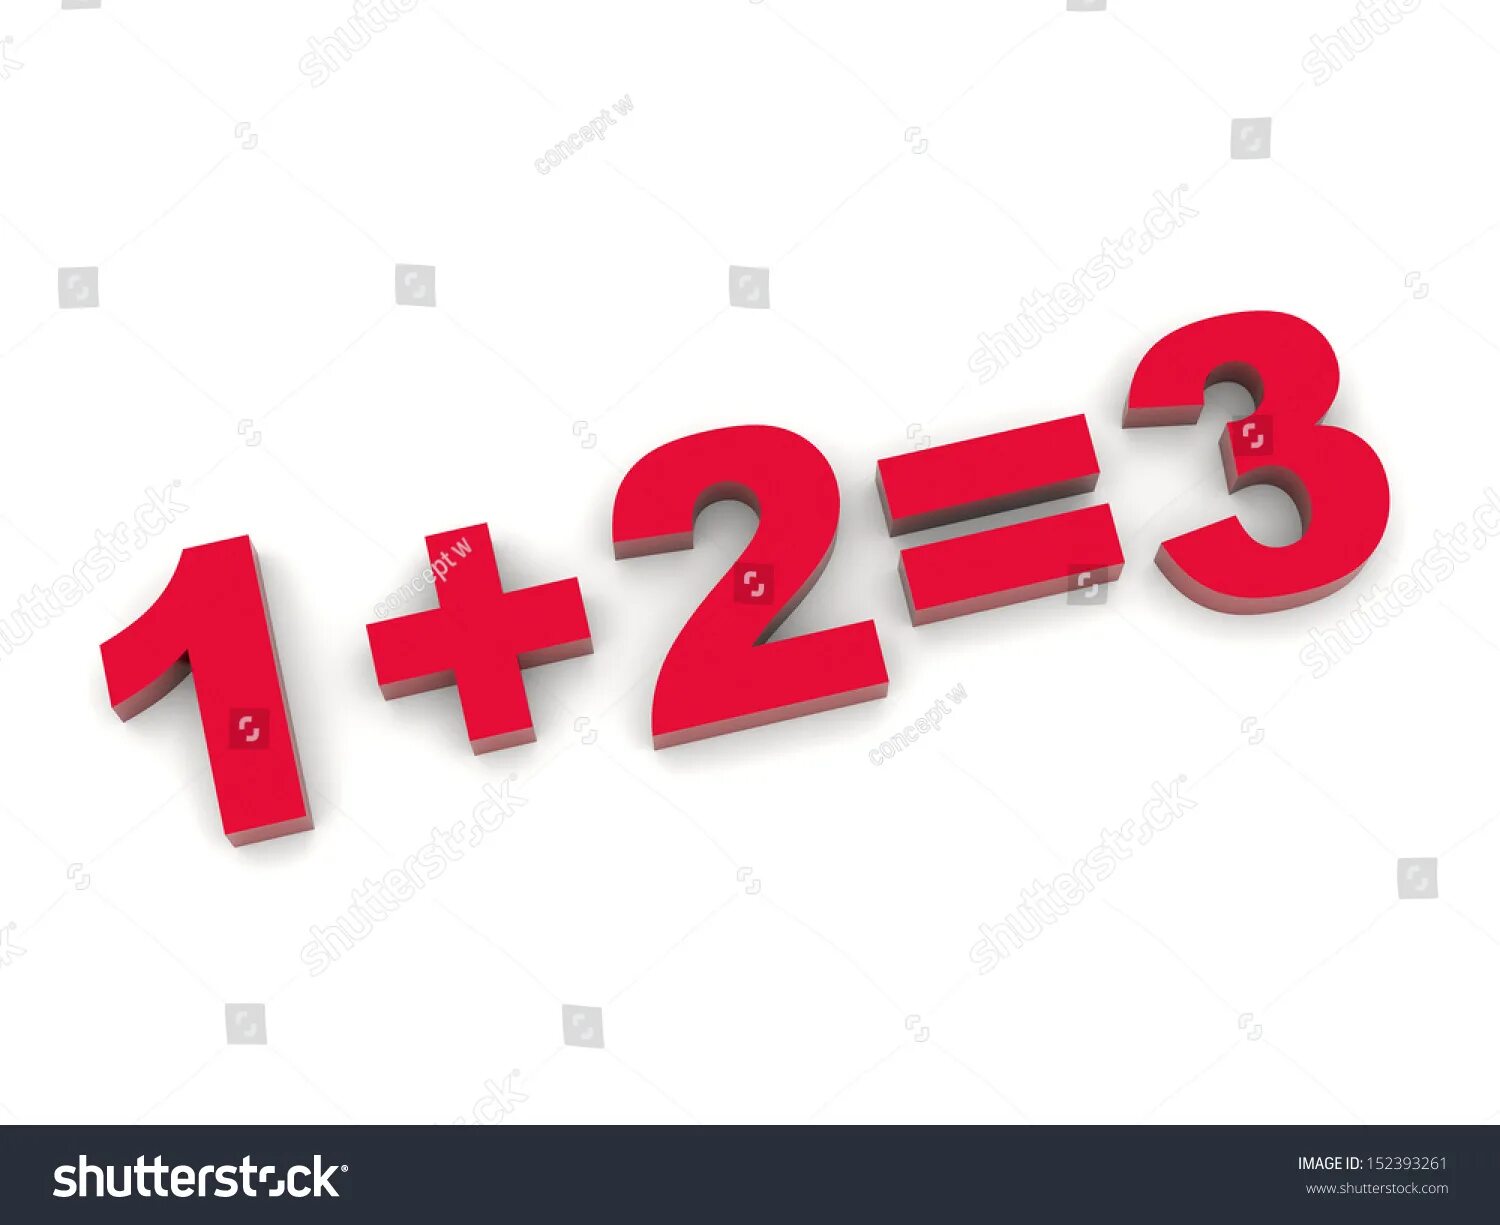 1 21 плюс 1 7. 1 Плюс 1 равно 3. 1 Плюс 1 равно 2. 1 Плюс 2 равно 3. 2 Плюс 2 картинки.